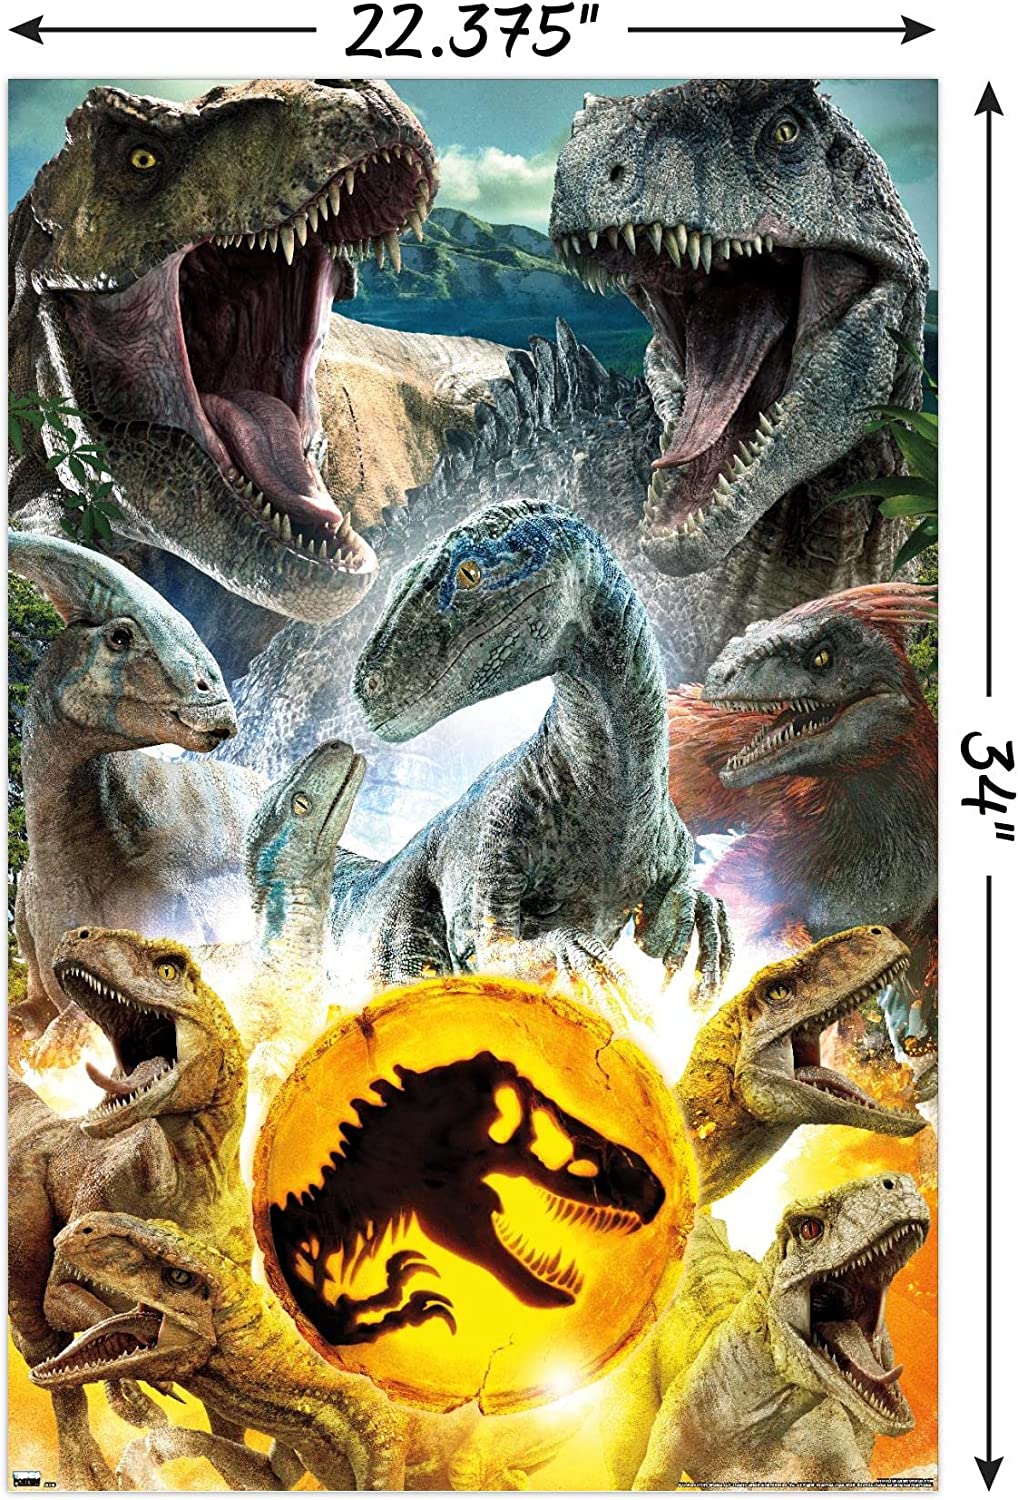 Jurassic World 3 Dominion Fan Art Wallpapers